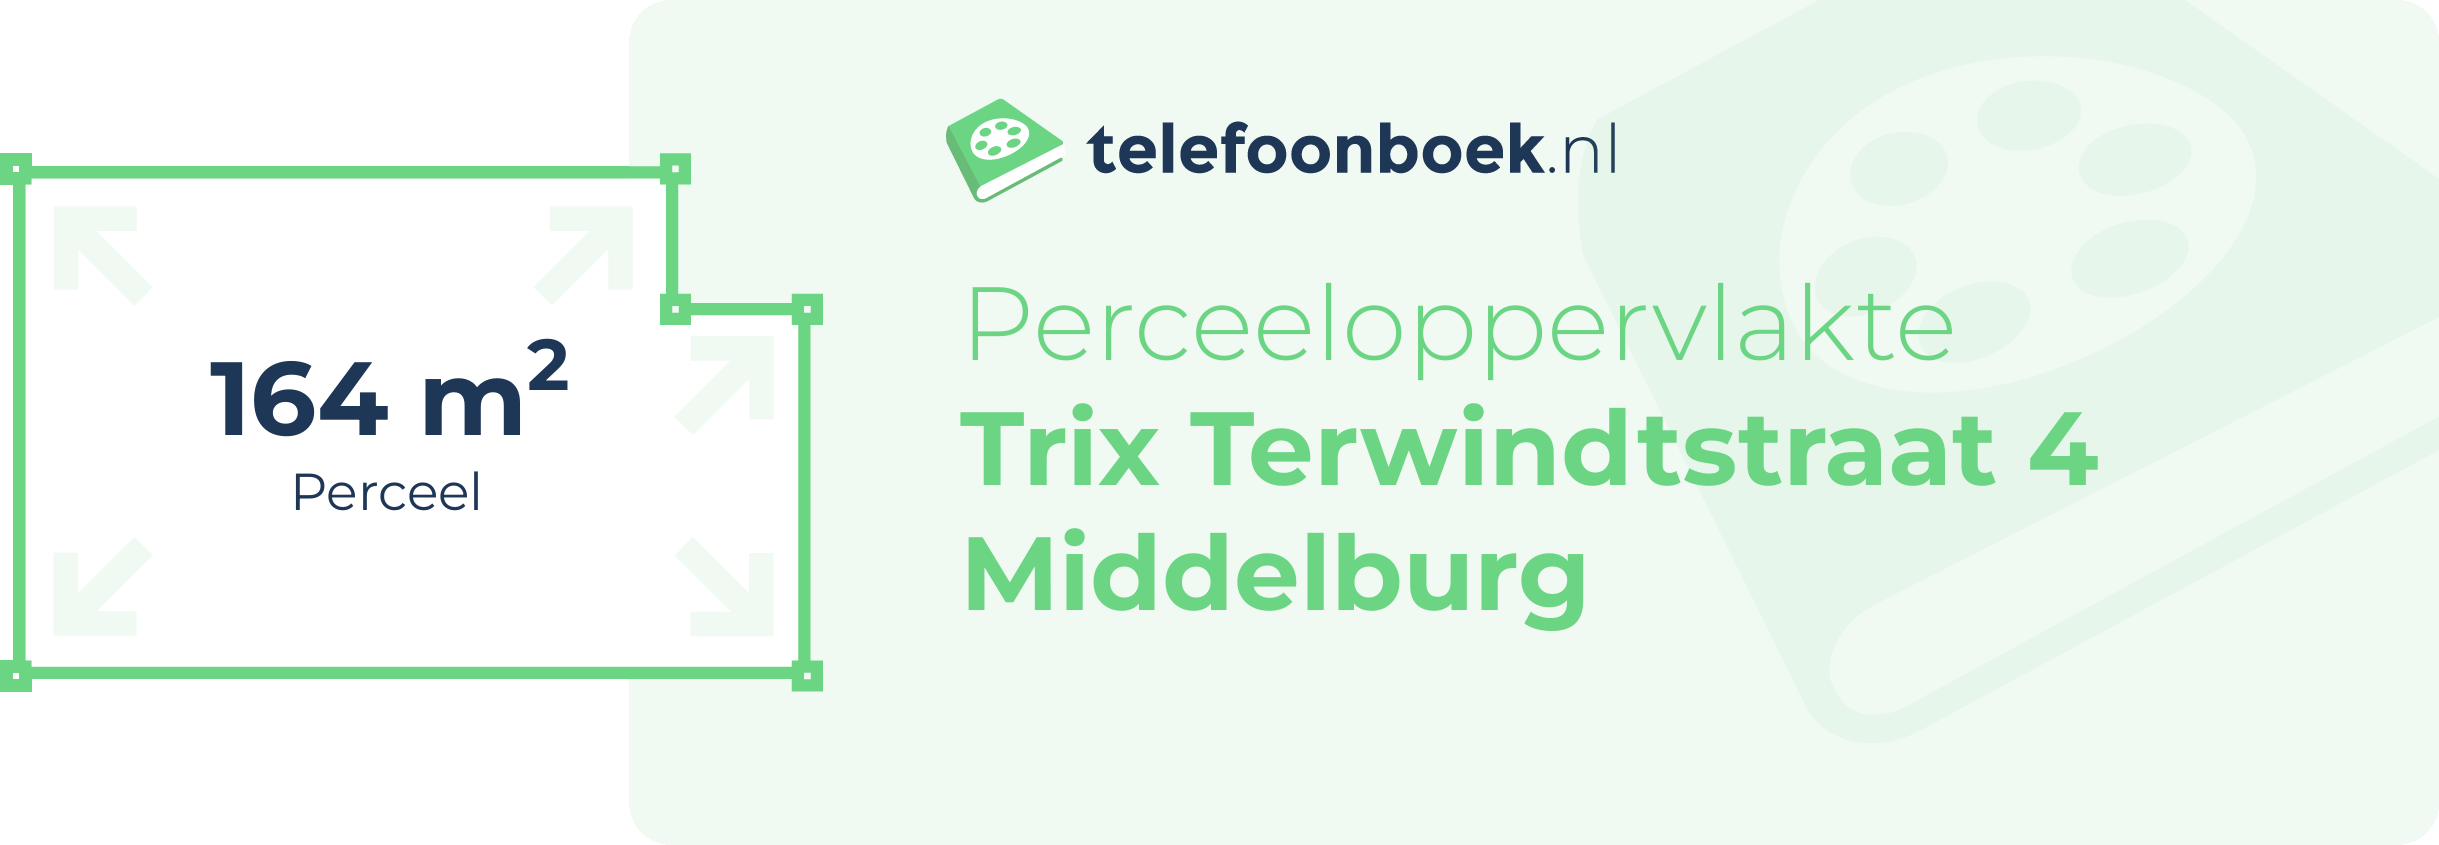 Perceeloppervlakte Trix Terwindtstraat 4 Middelburg